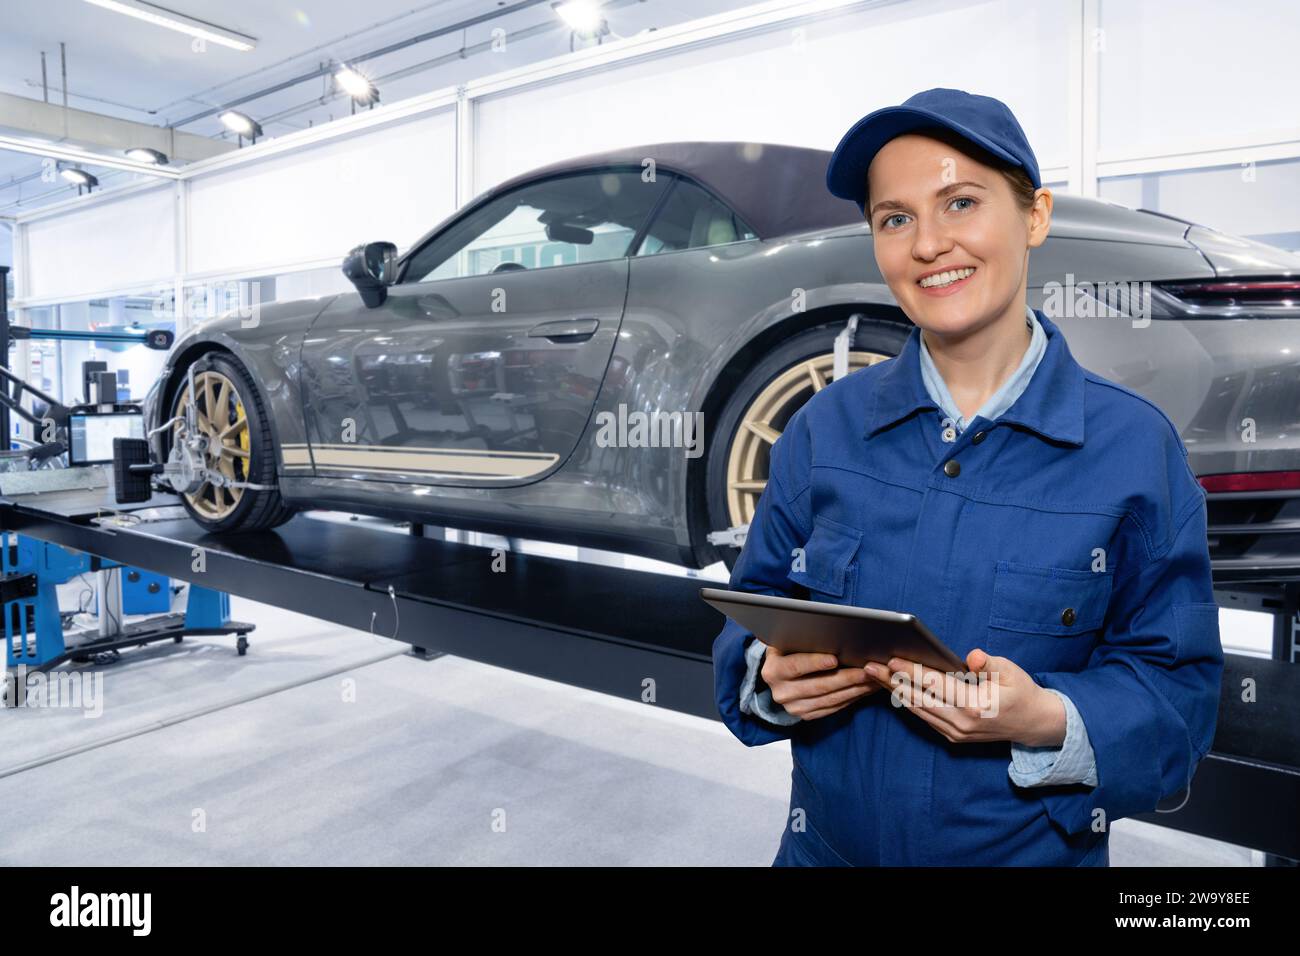 Car repair in car service. Stock Photo